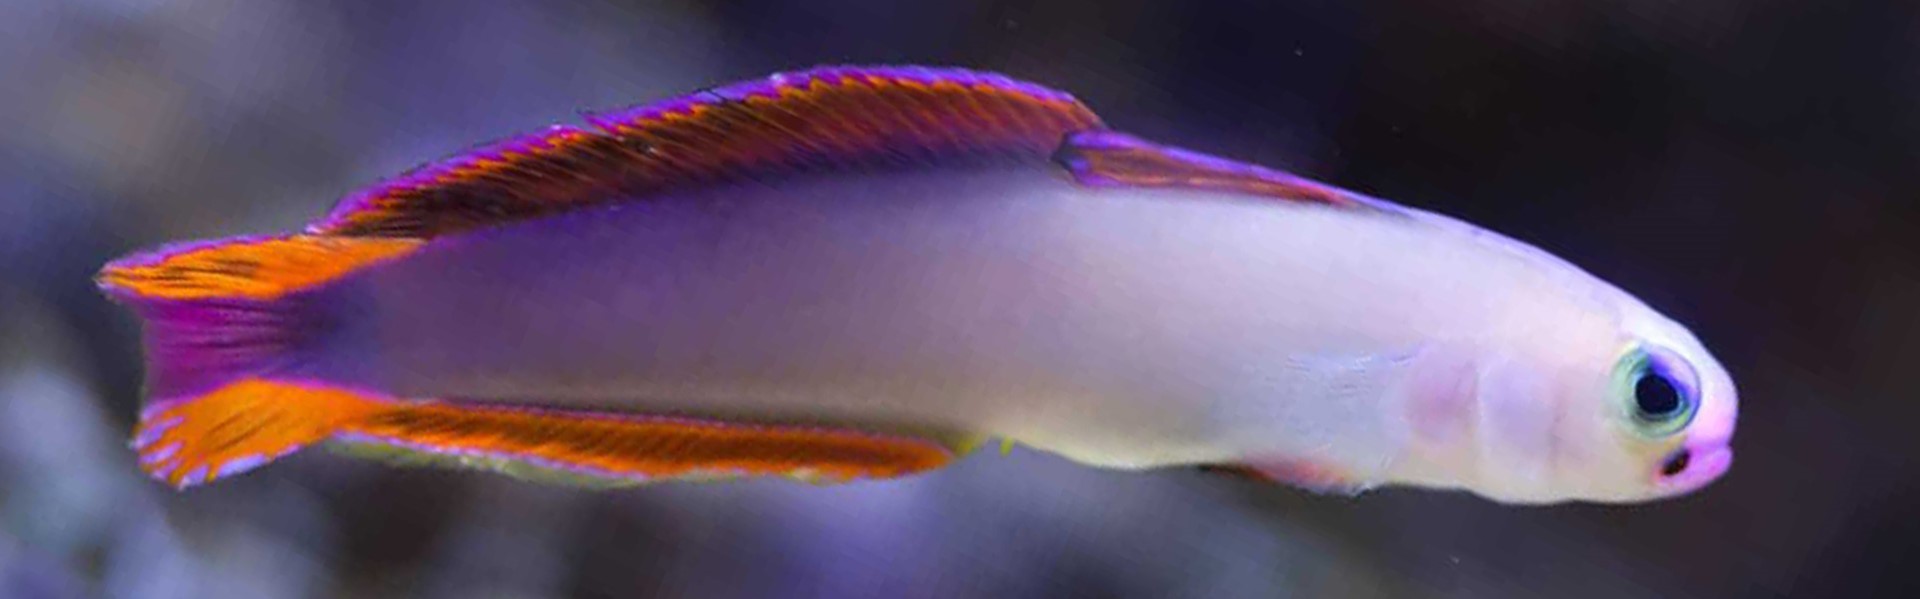 The Exquisite Dartfish